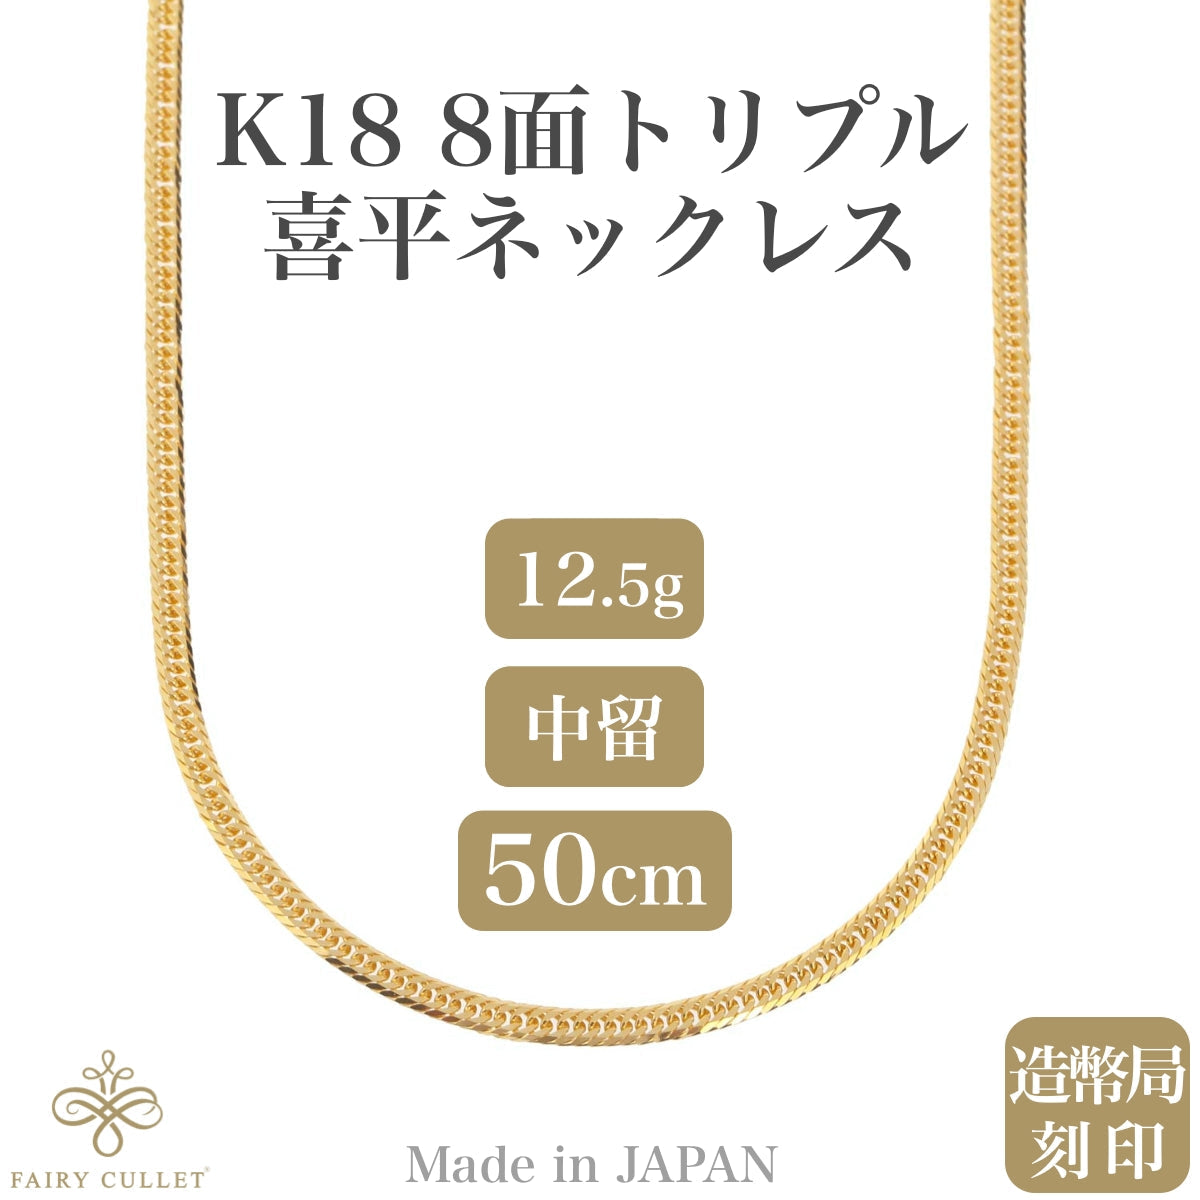 18金ネックレス K18 8面トリプル喜平チェーン 日本製 検定印 約12g